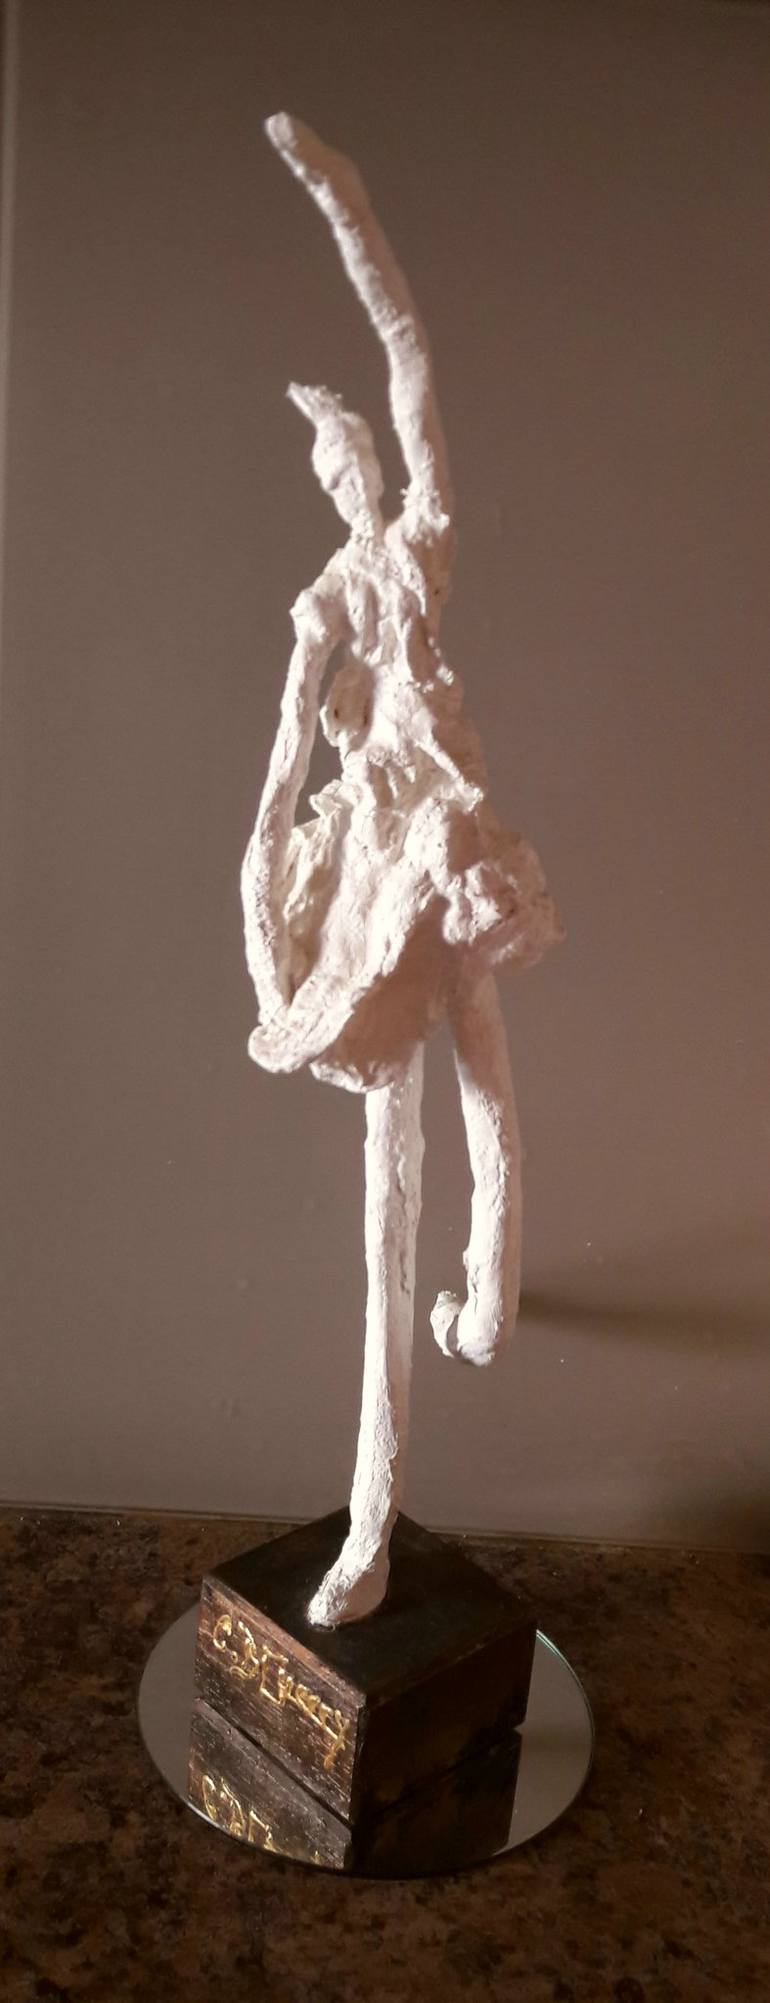 Original Sport Sculpture by Guerry christiane